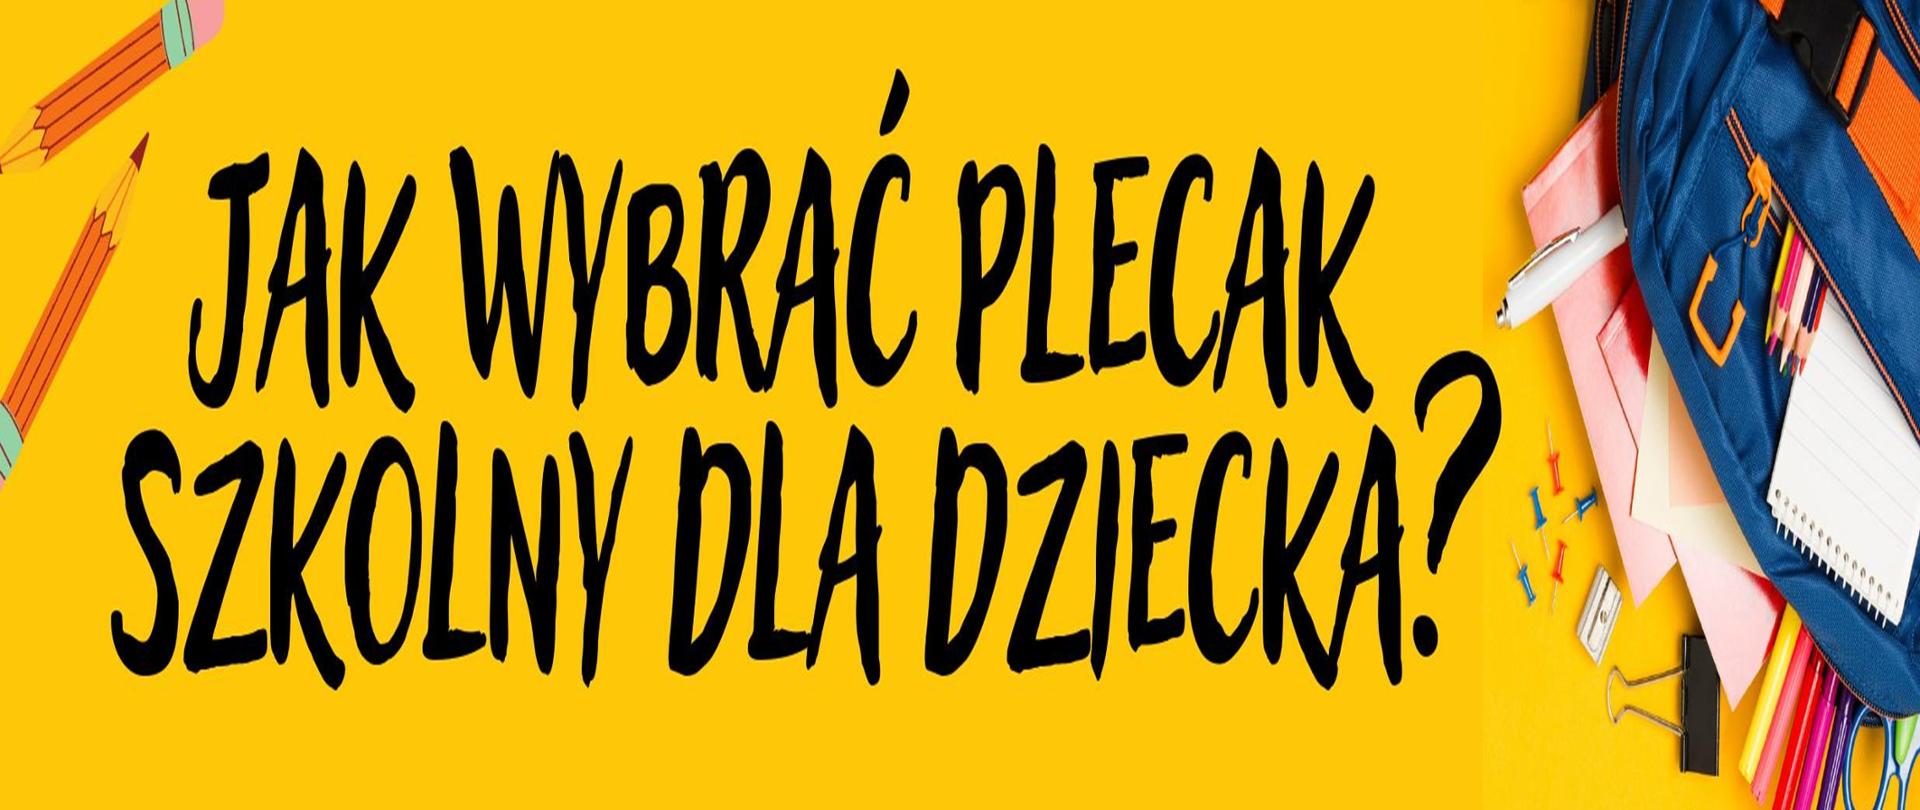 Logo - plecak szkolny na żółtym tle po bokach przybory szkolne, na środku napis czarnymi literami "Jak wybrać plecak szkolny dla dziecka"